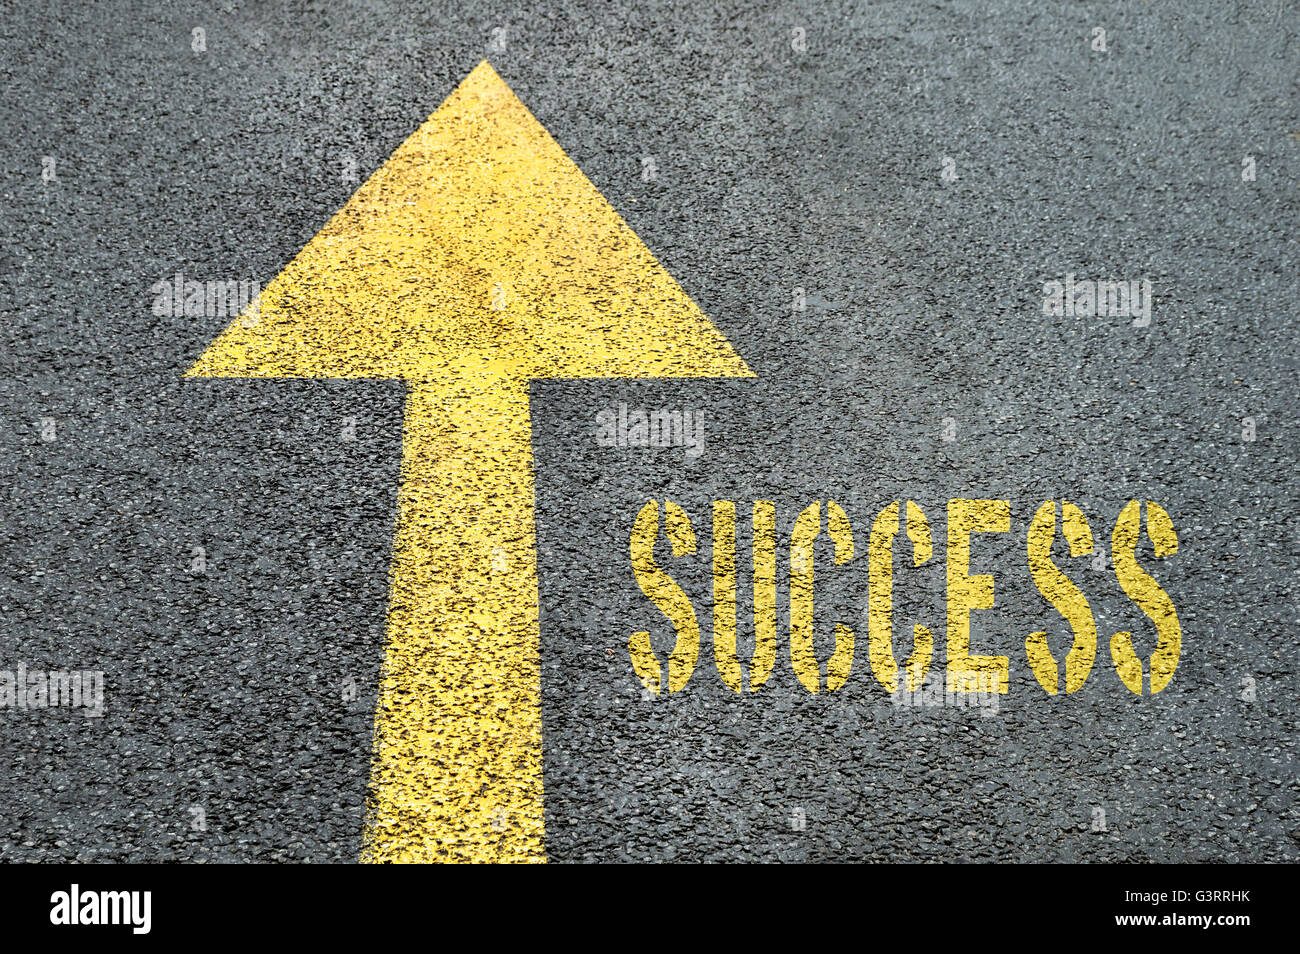 Gelbe vorwärts Straßenschild mit Erfolg Wort auf der asphaltierten Straße. Business-Konzept. Stockfoto